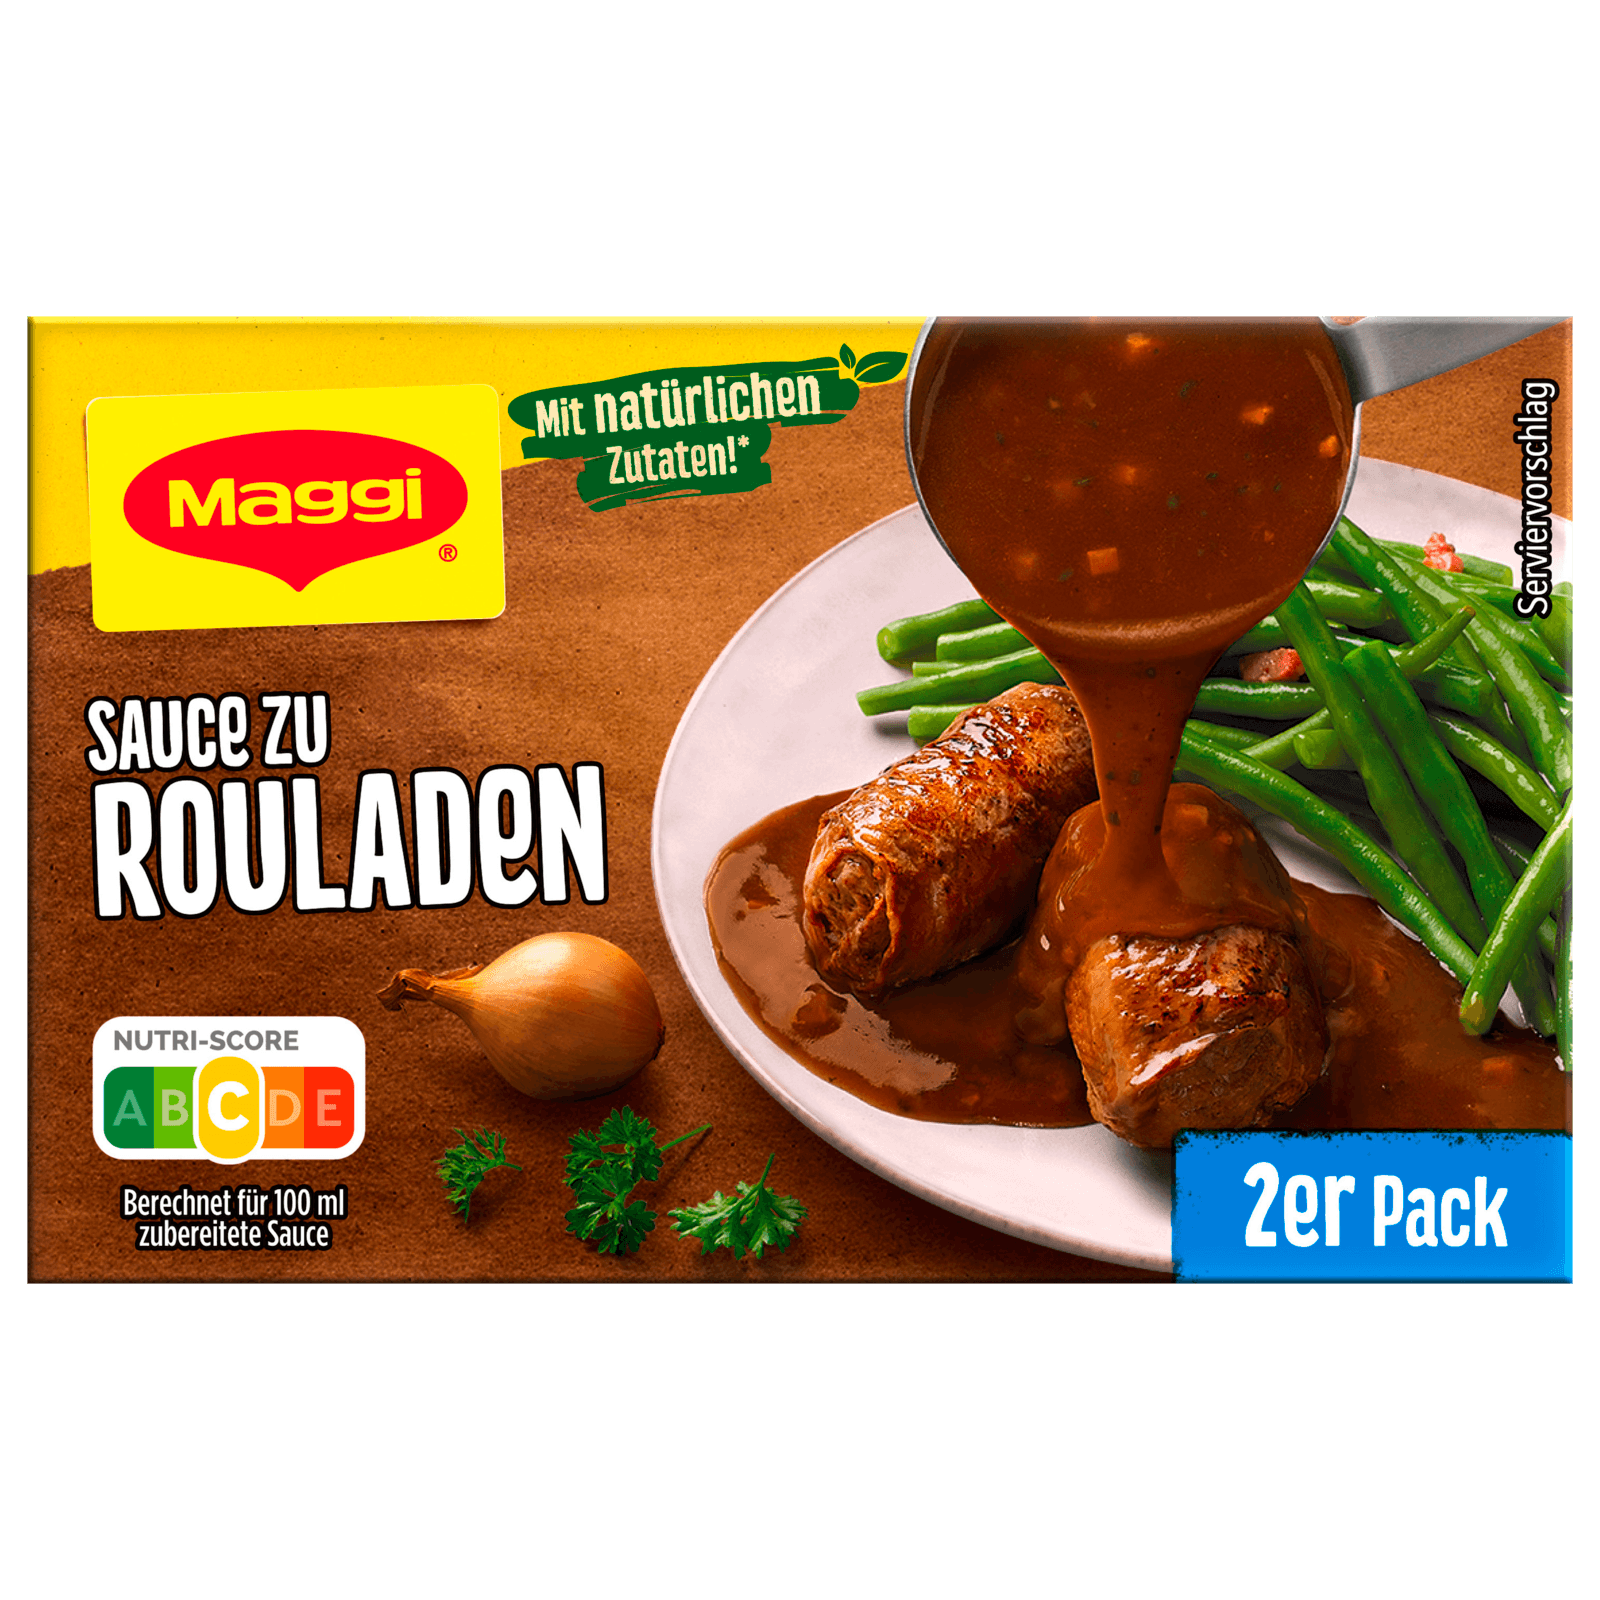 Maggi Sauce zu Rouladen 2er Pack ergibt 2x250ml  für 1.59 EUR